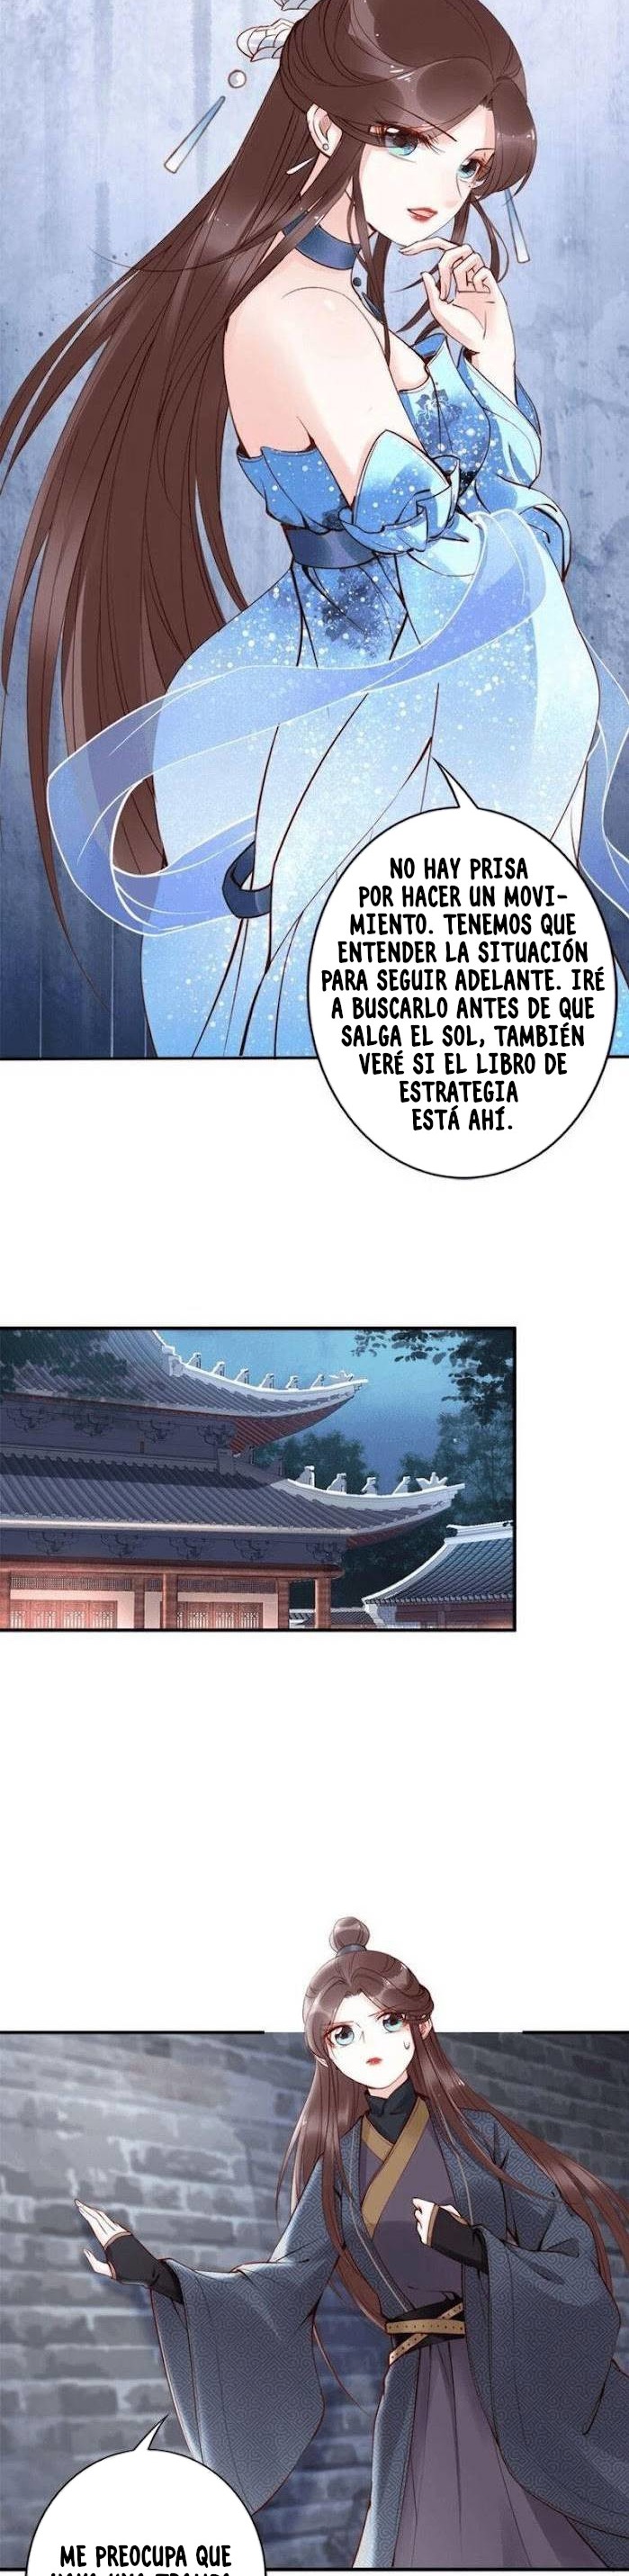 Manga Fenix volando desde el Palacio del Este Chapter 29 image number 9